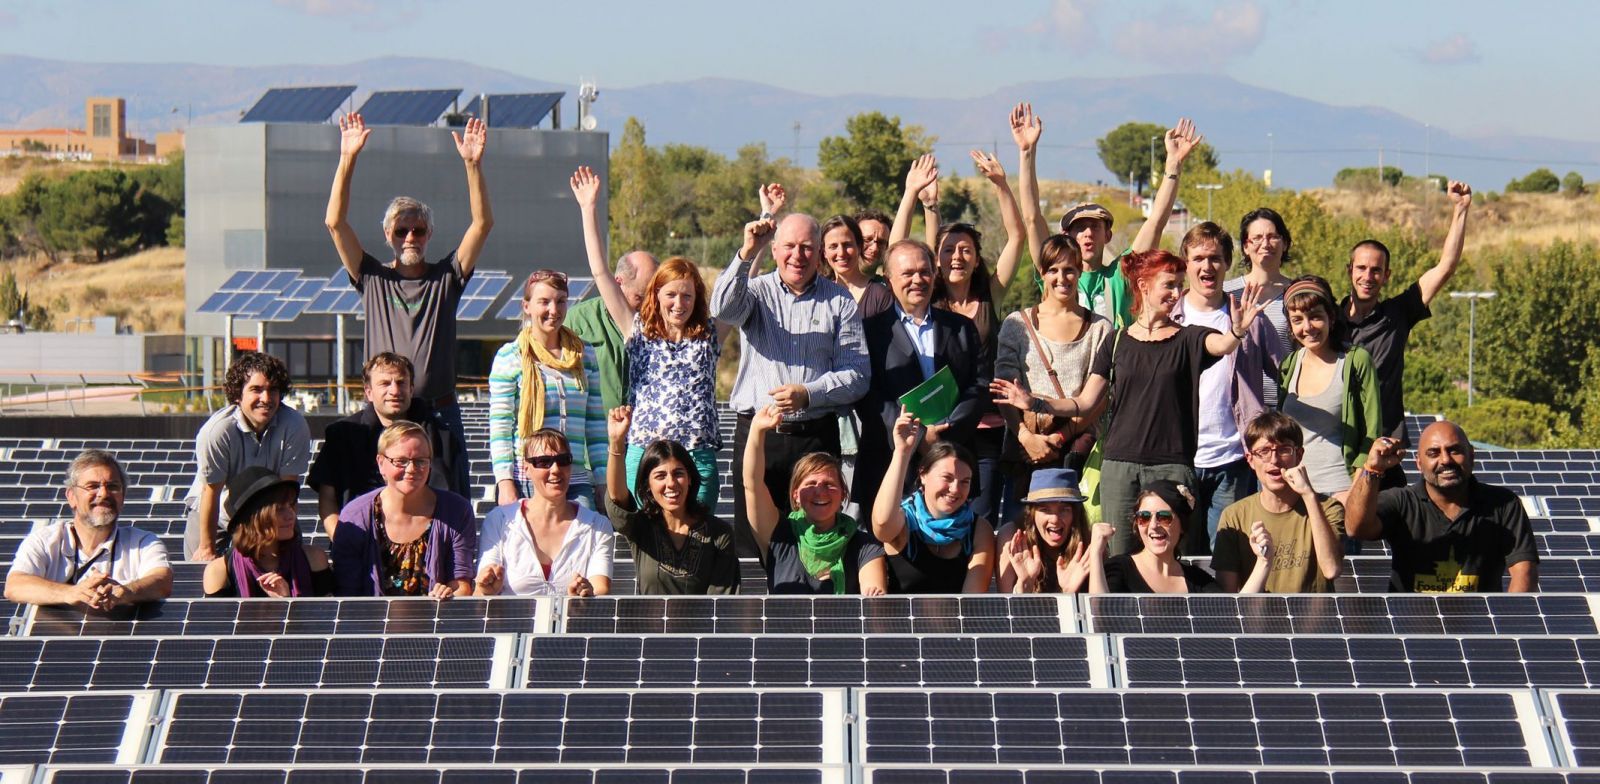 Így terjedhetnek el a háztetőkön a napelemes kiserőművek és a közösségi energia